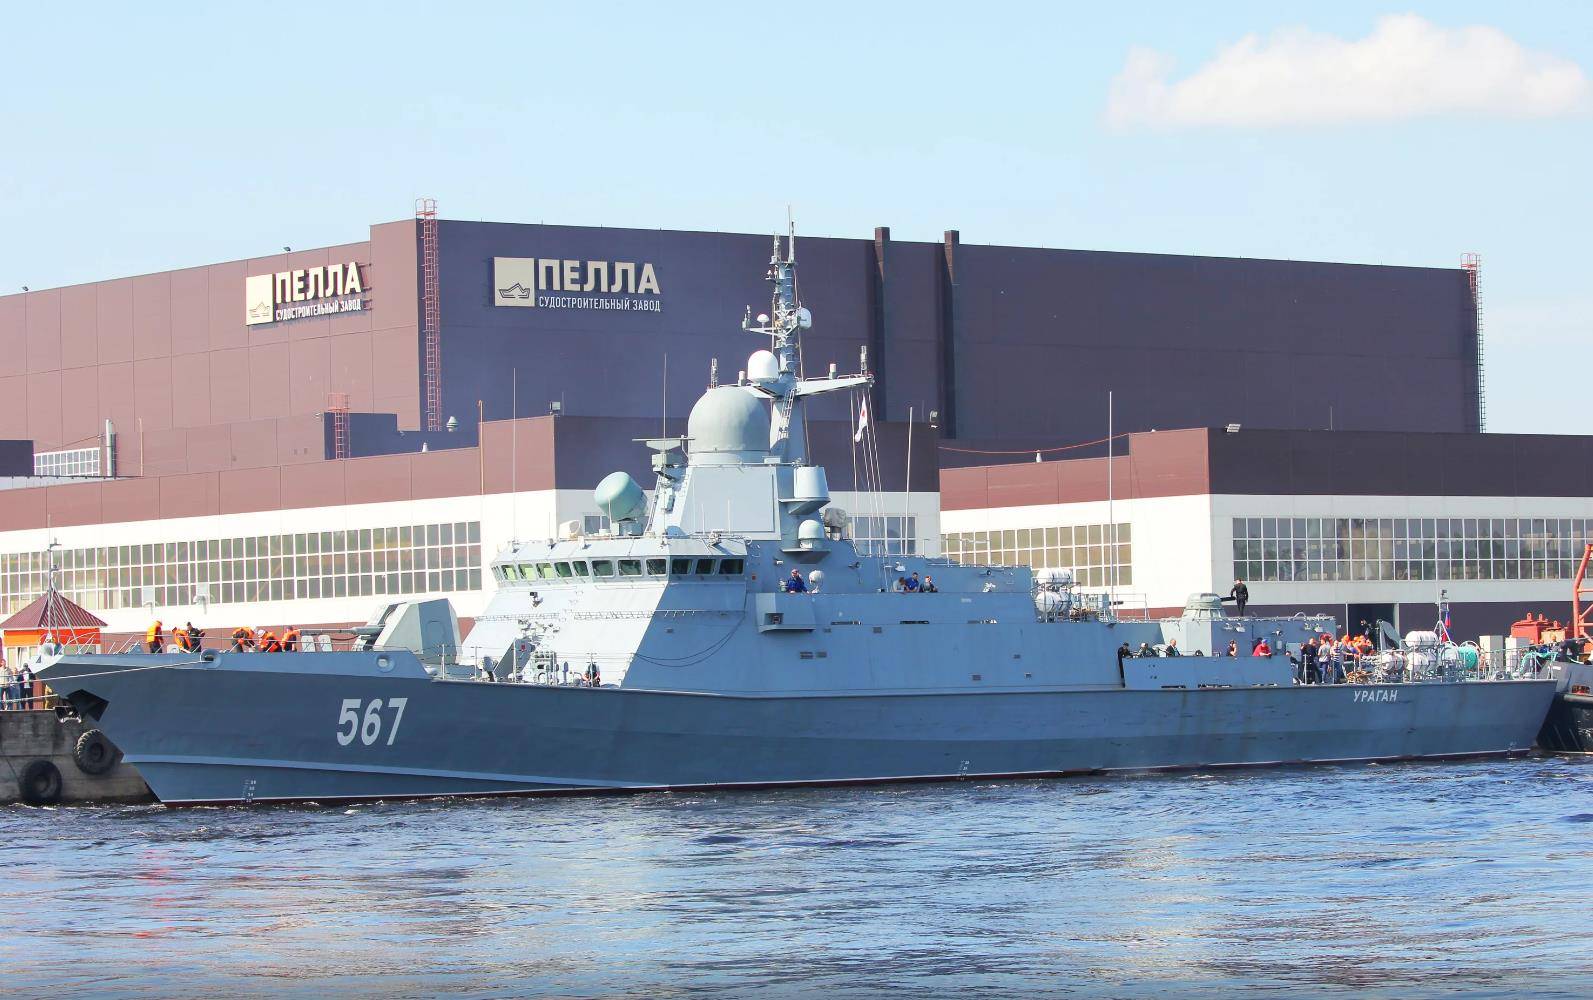 22800型轻型护卫舰,排水量仅有800吨,但攻击力强悍